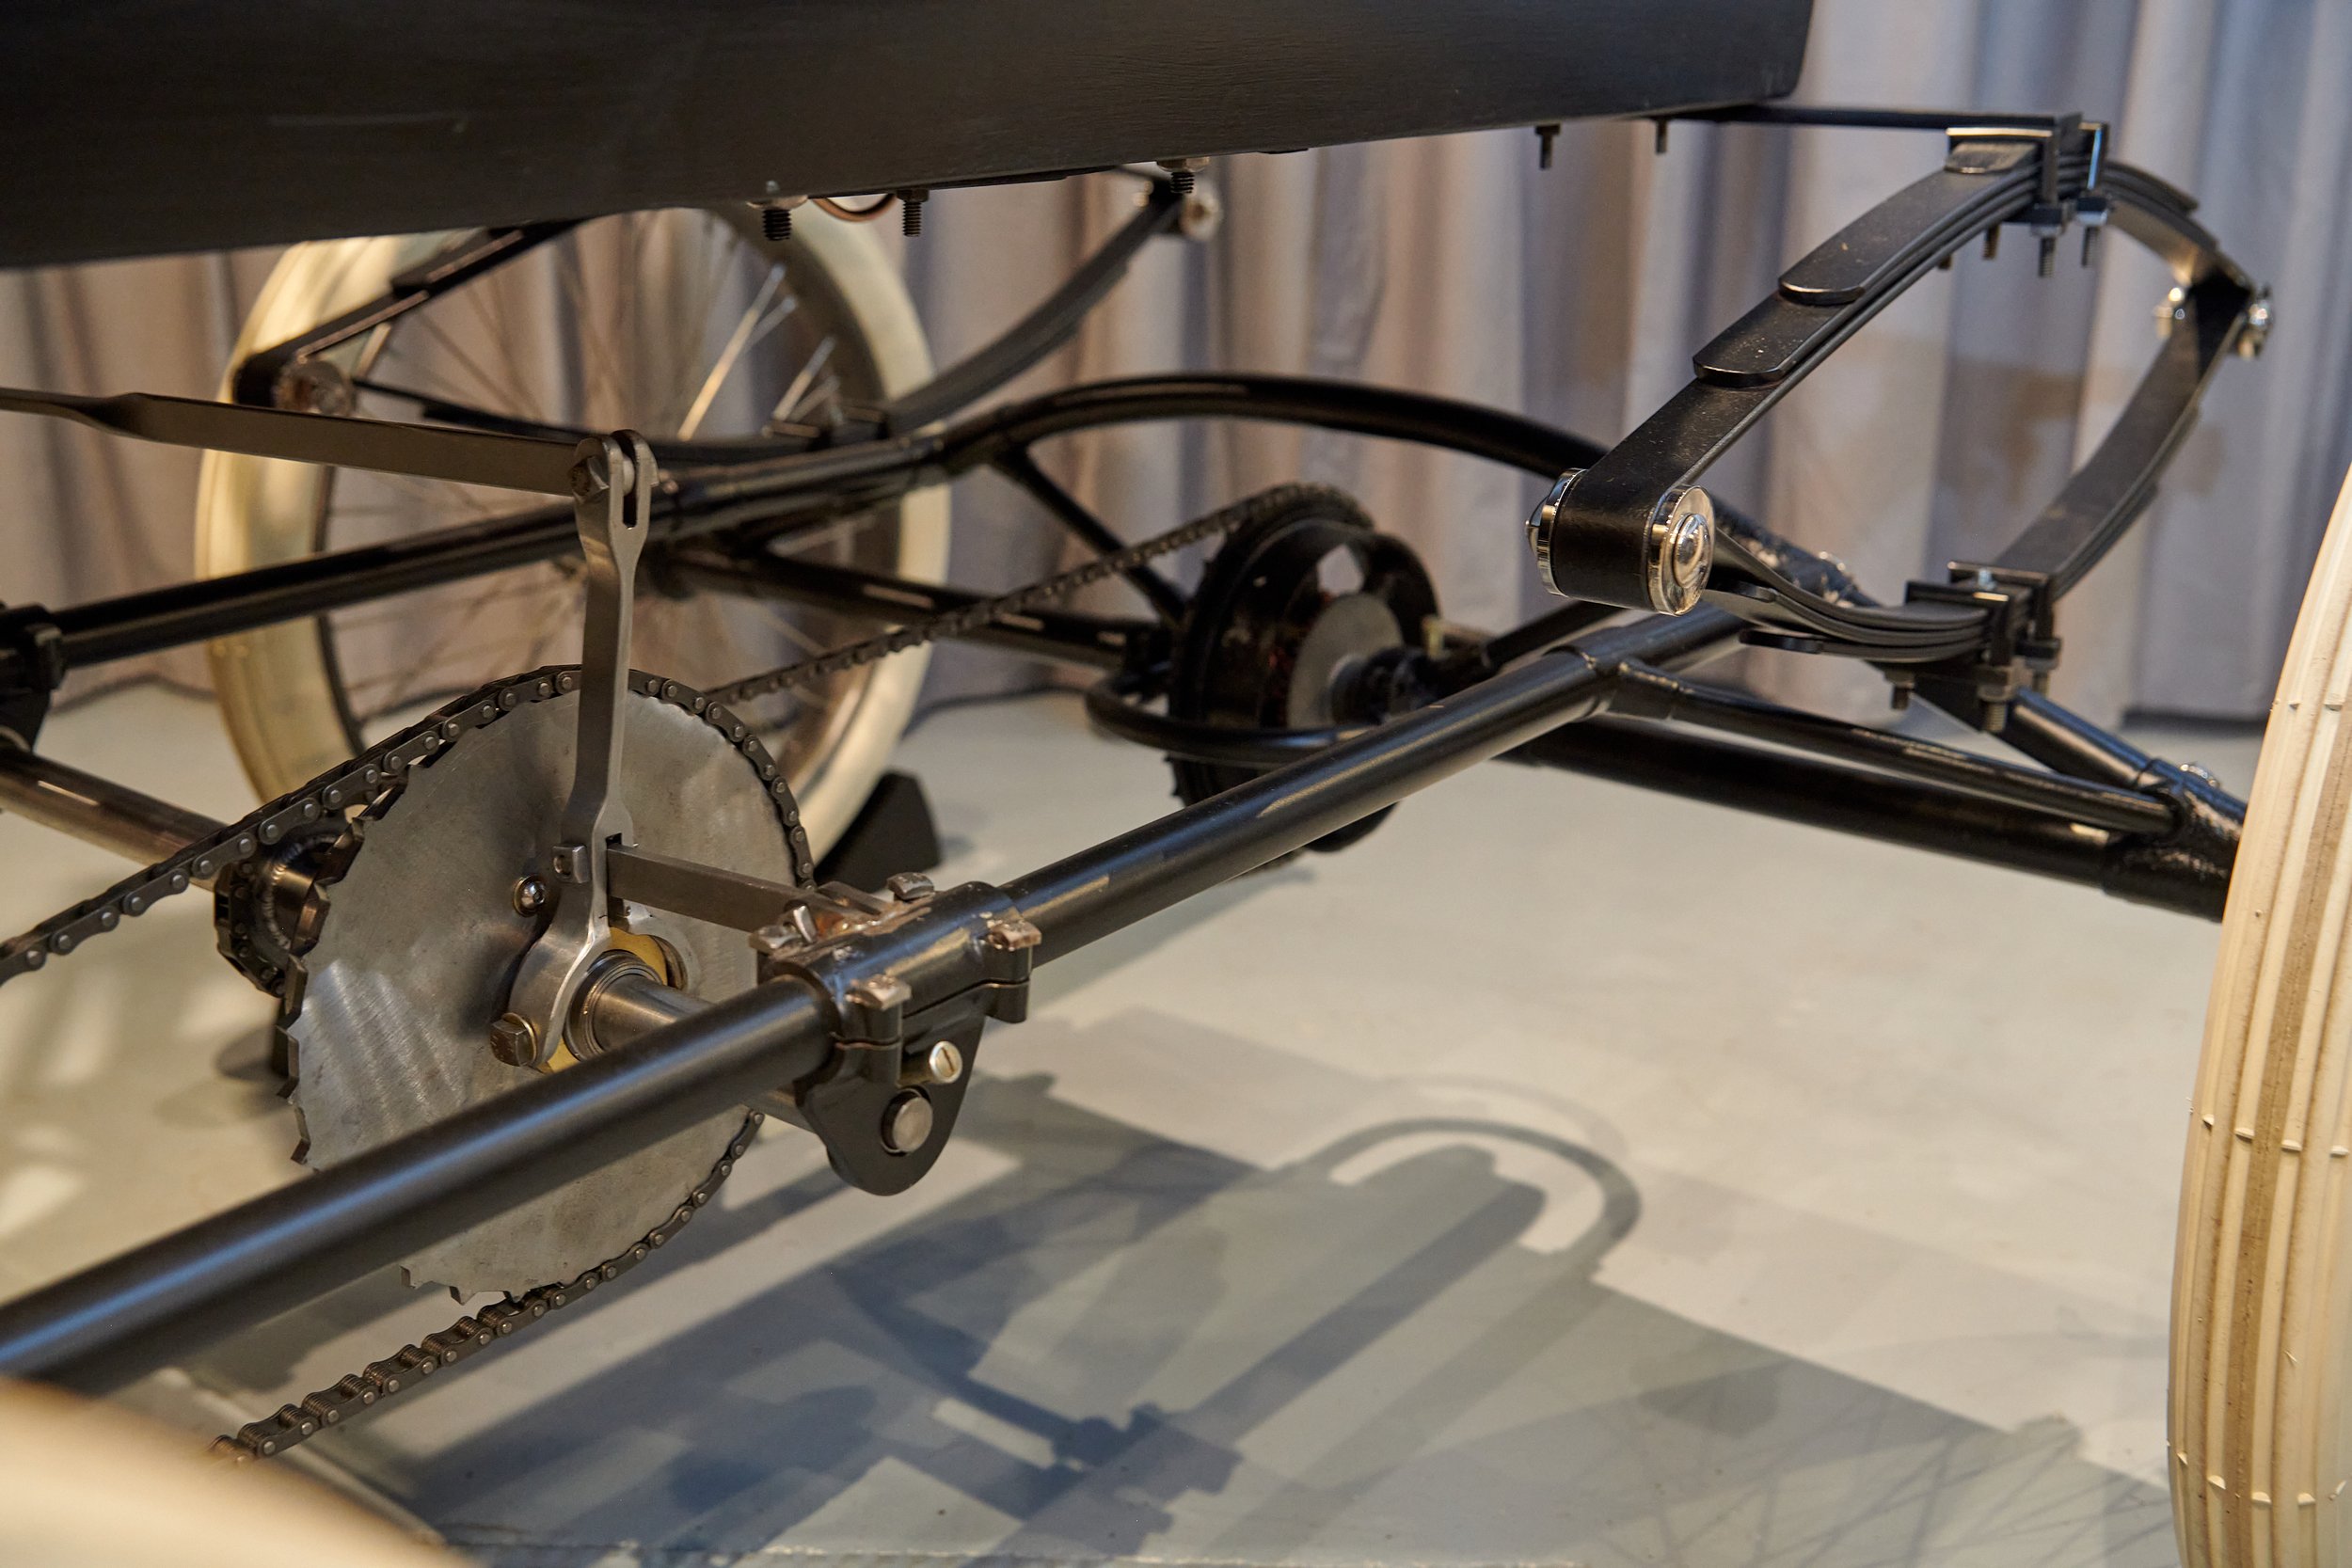  La transmission par chaîne de la roue arrière de la réplique. George Foote Foss a fréquemment rappelé à quel point la transmission du véhicule d'origine était peu fiable et difficile à utiliser. 